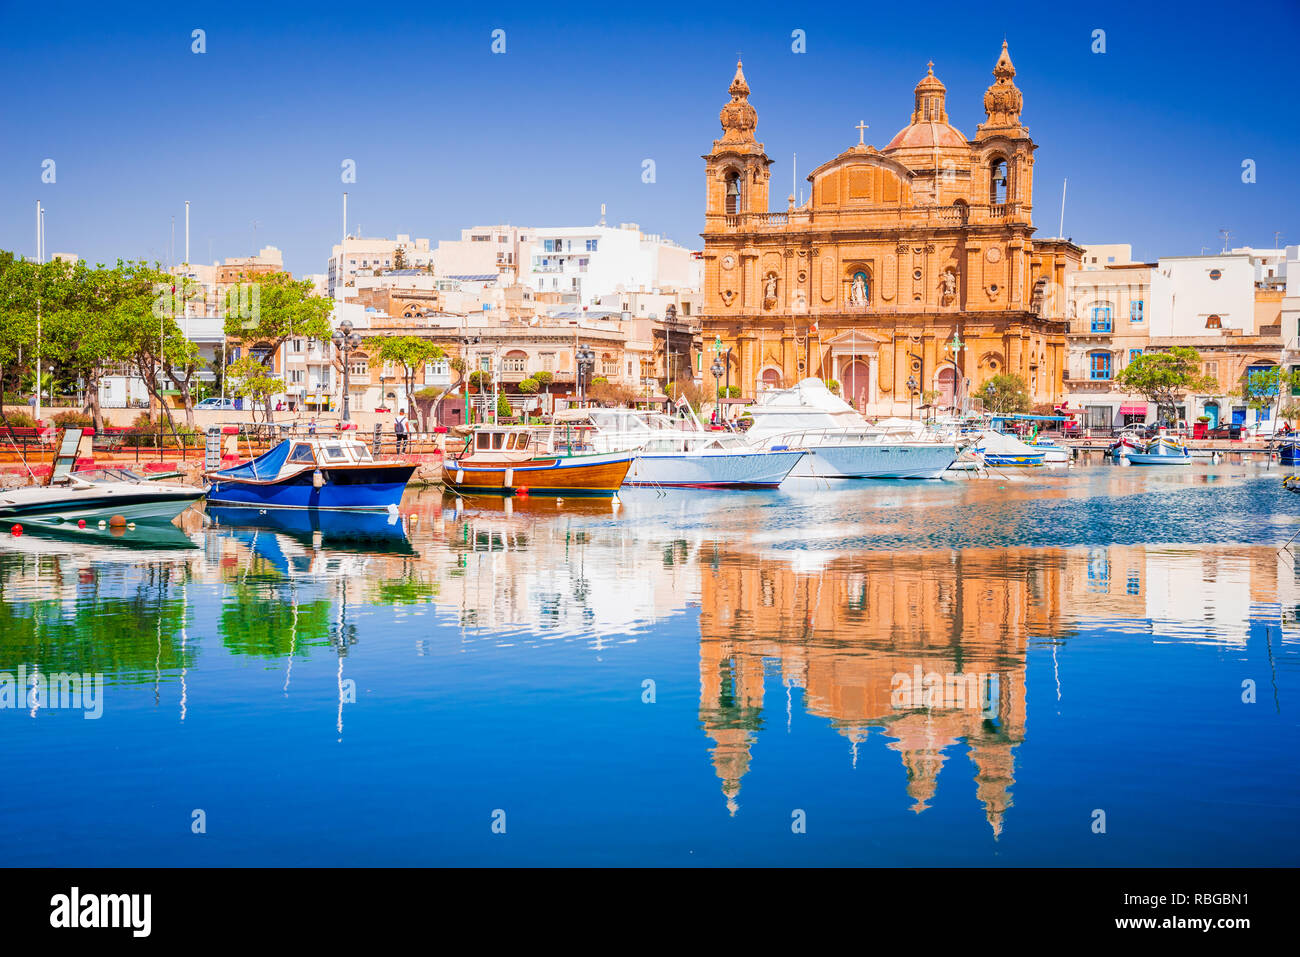 La Valette, Malte. Msida Marina Boat et église la réflexion dans l'eau. Banque D'Images